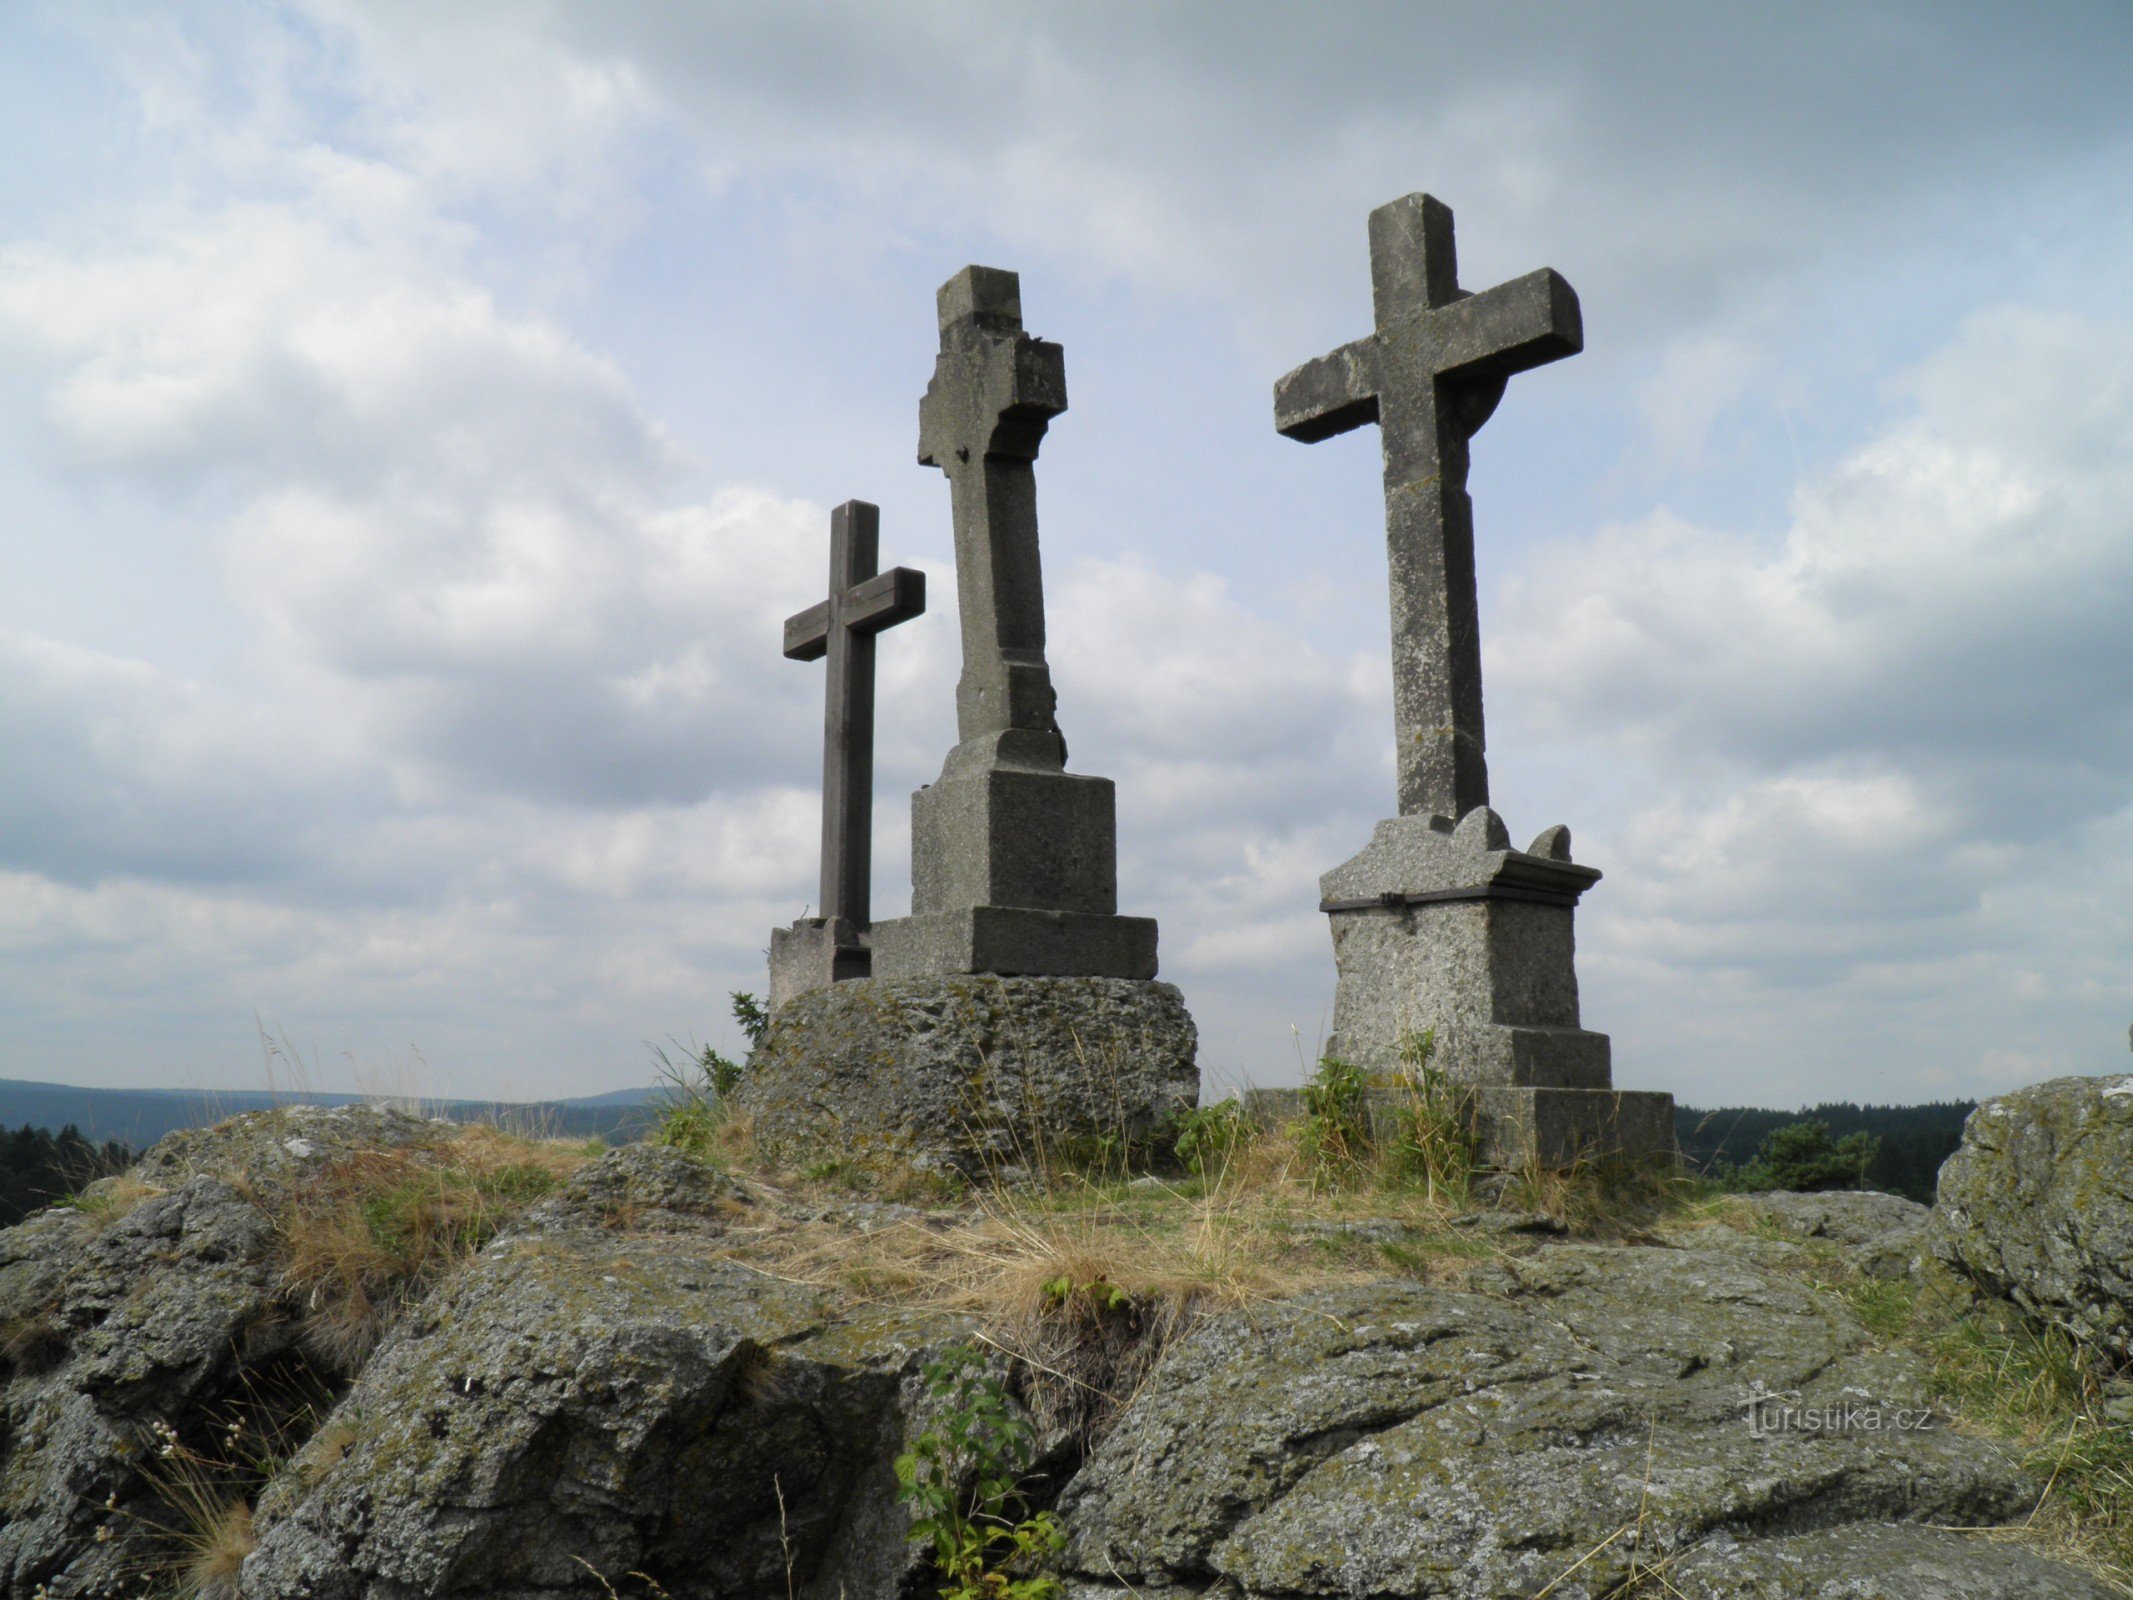 Tre croci nei pressi del villaggio di Prameny.